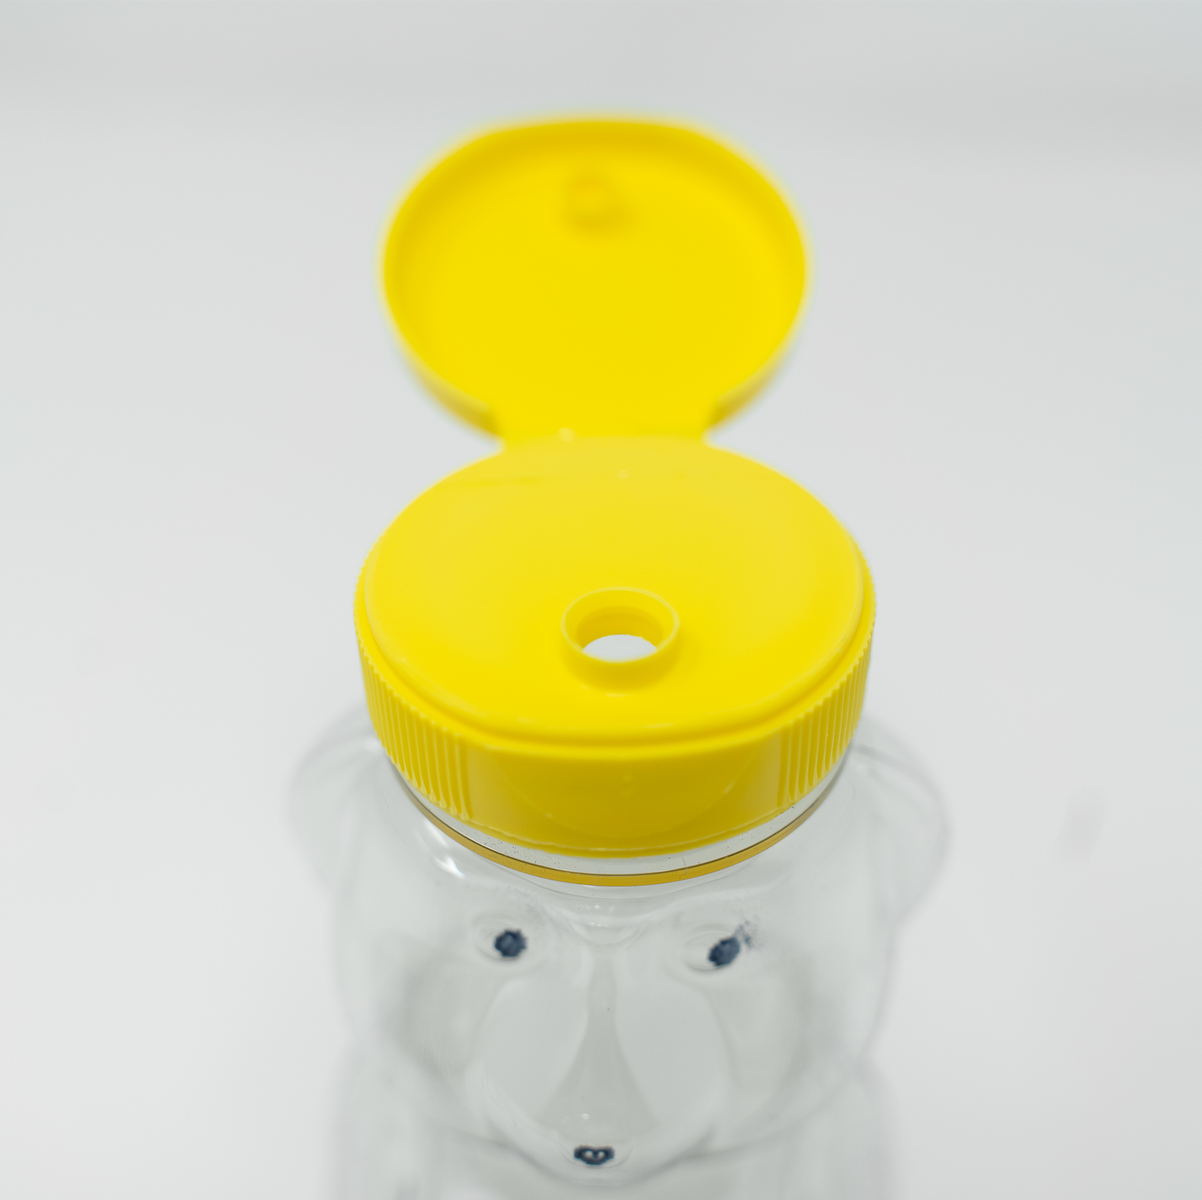 24 oz Honeycomb Bottles - 190 Case